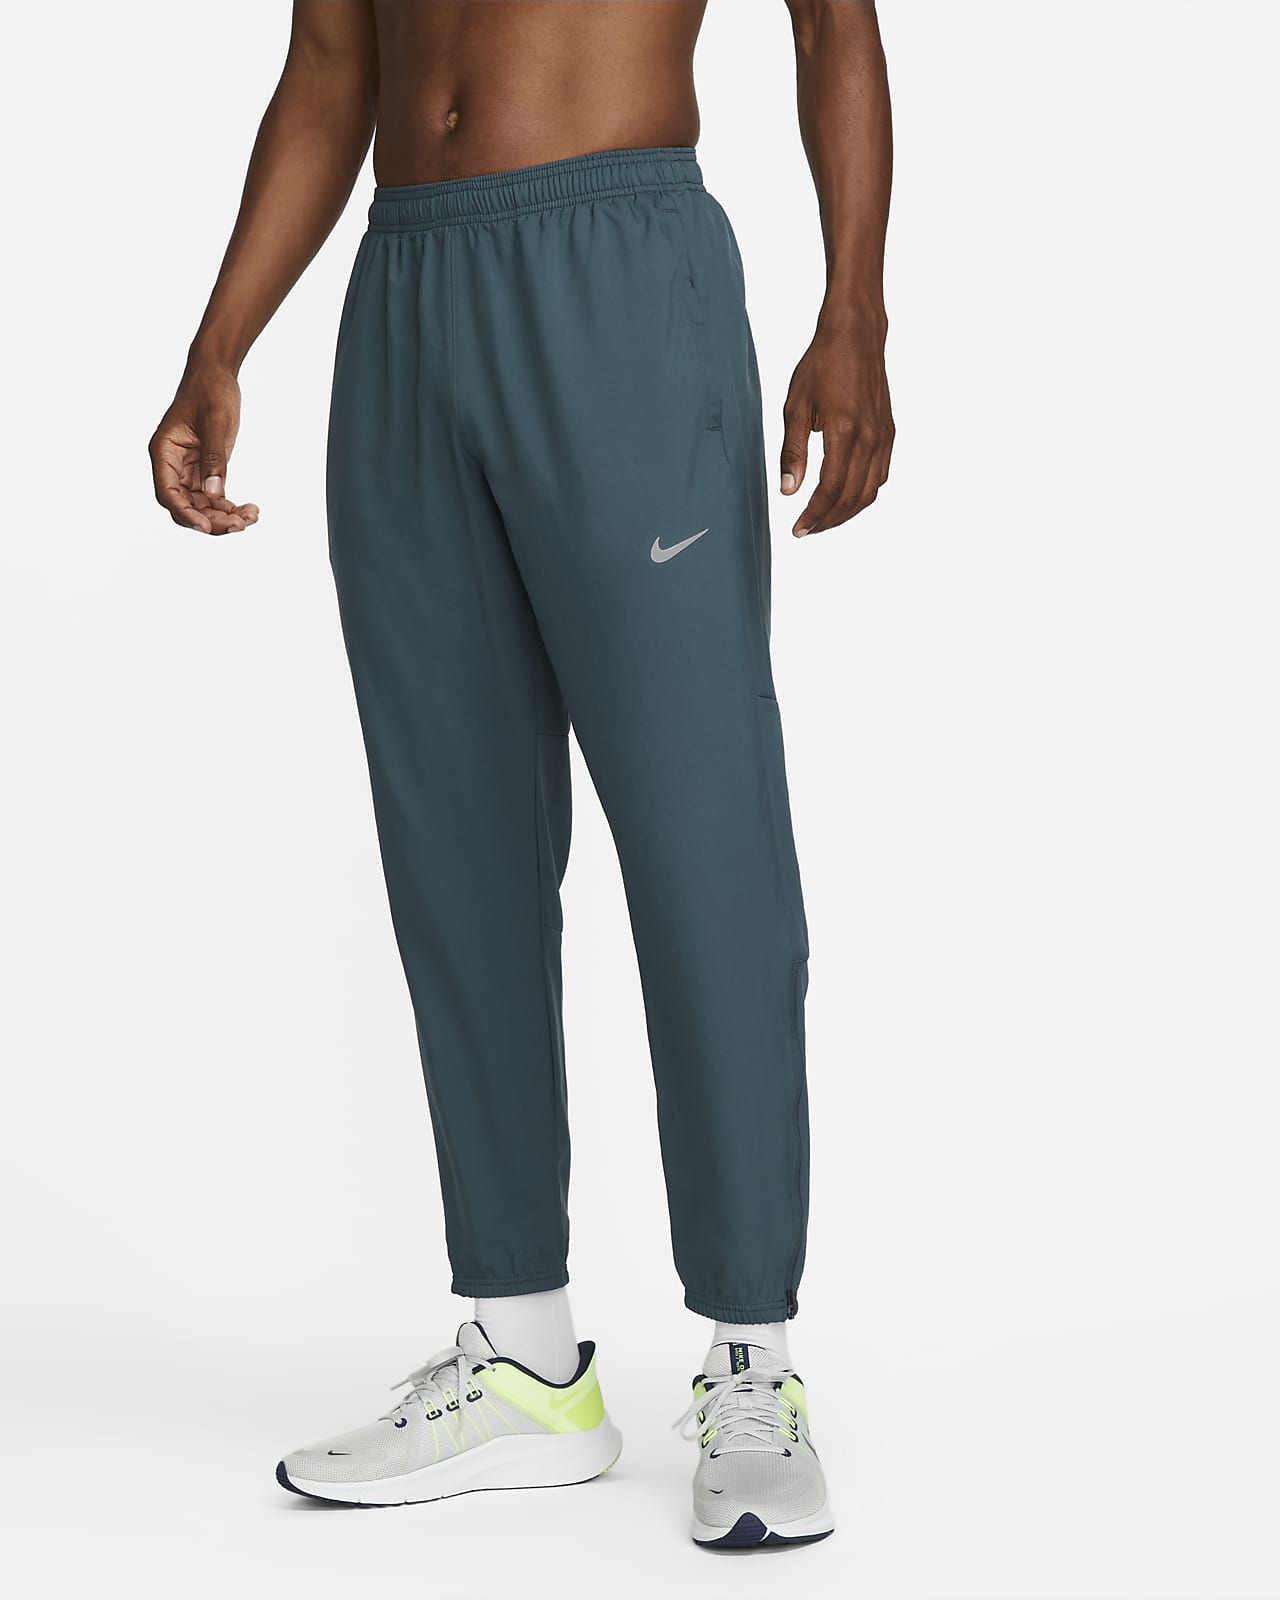 Shilling Begin Welkom Nike Dri-FIT Challenger Men's Woven Running Pants. Nike.com